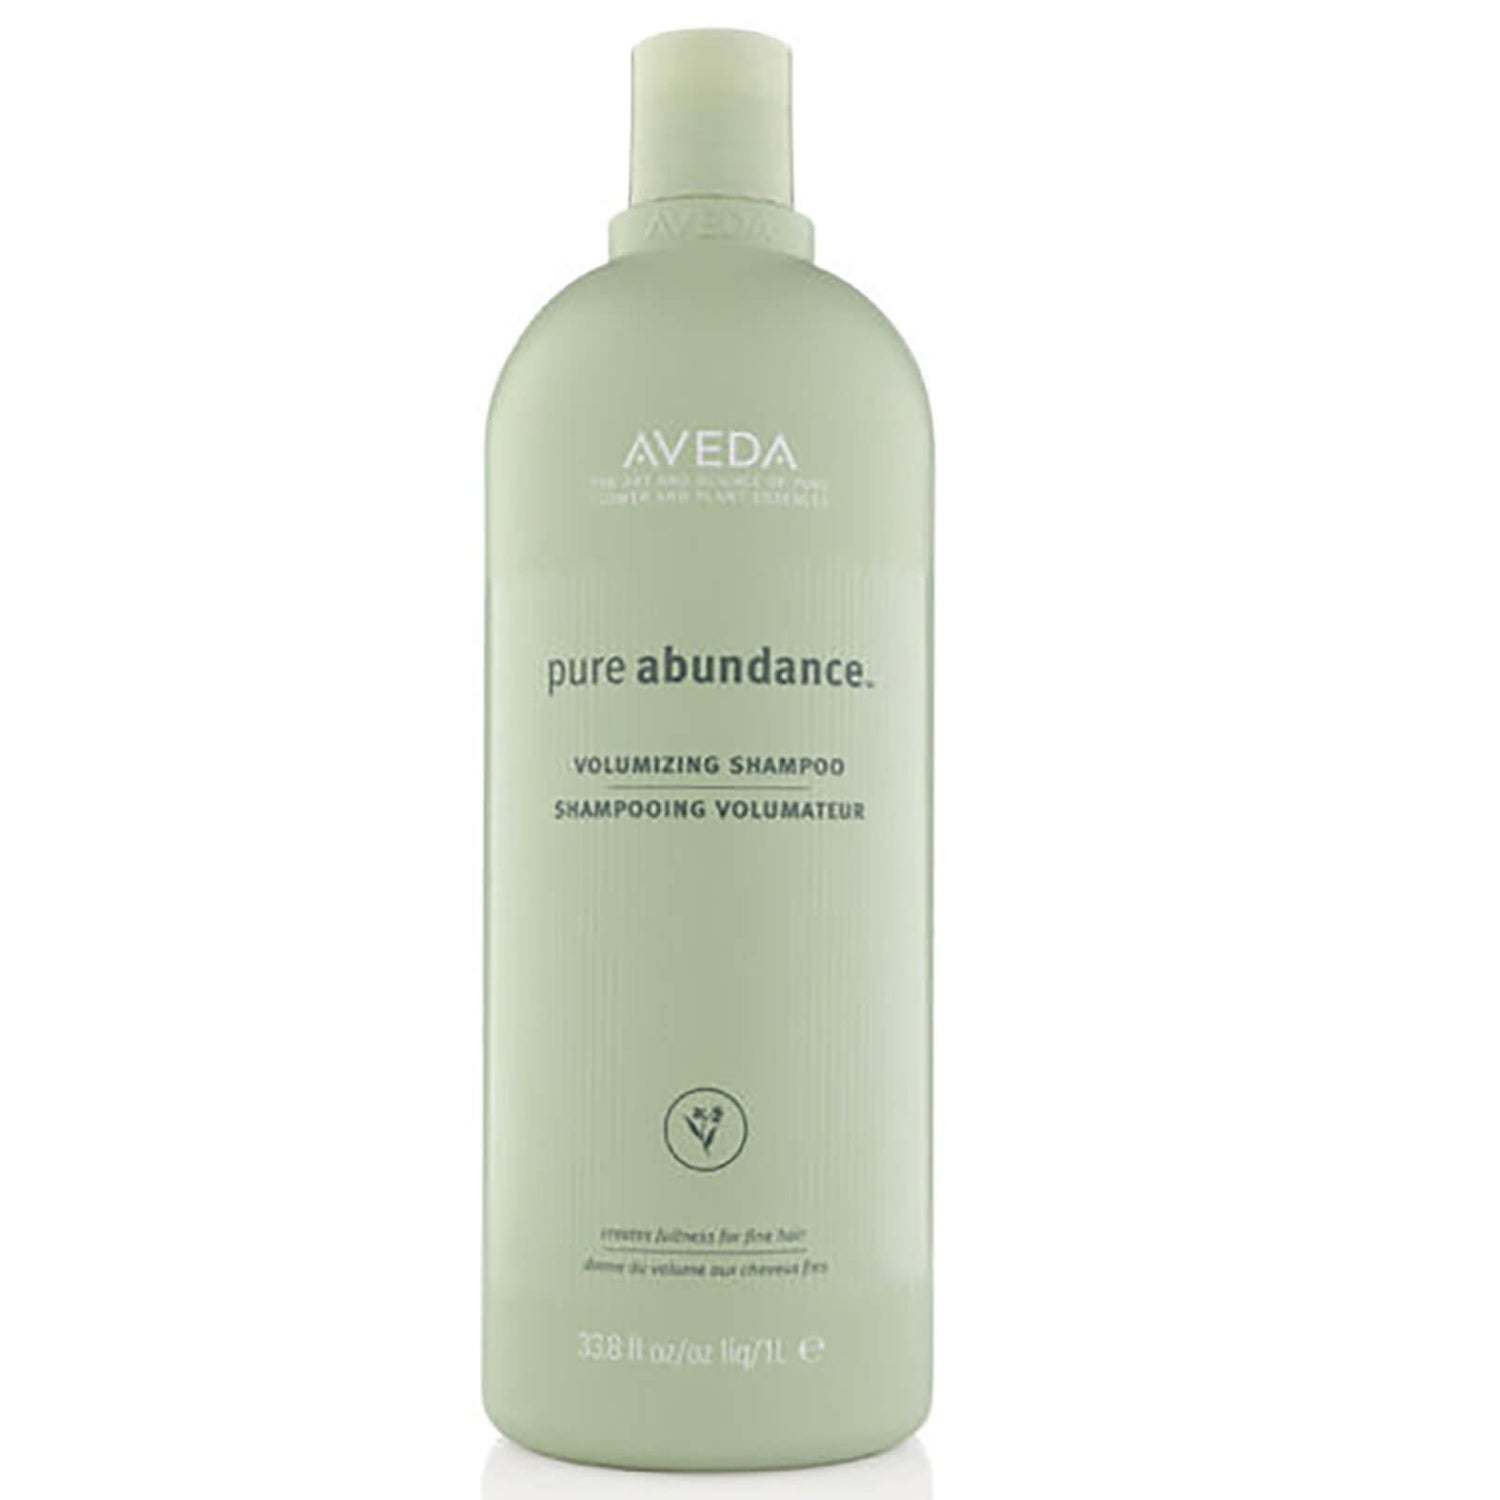 Aveda Pure Abundance Volumising Shampoo (1000ml) - (Worth £70.00)